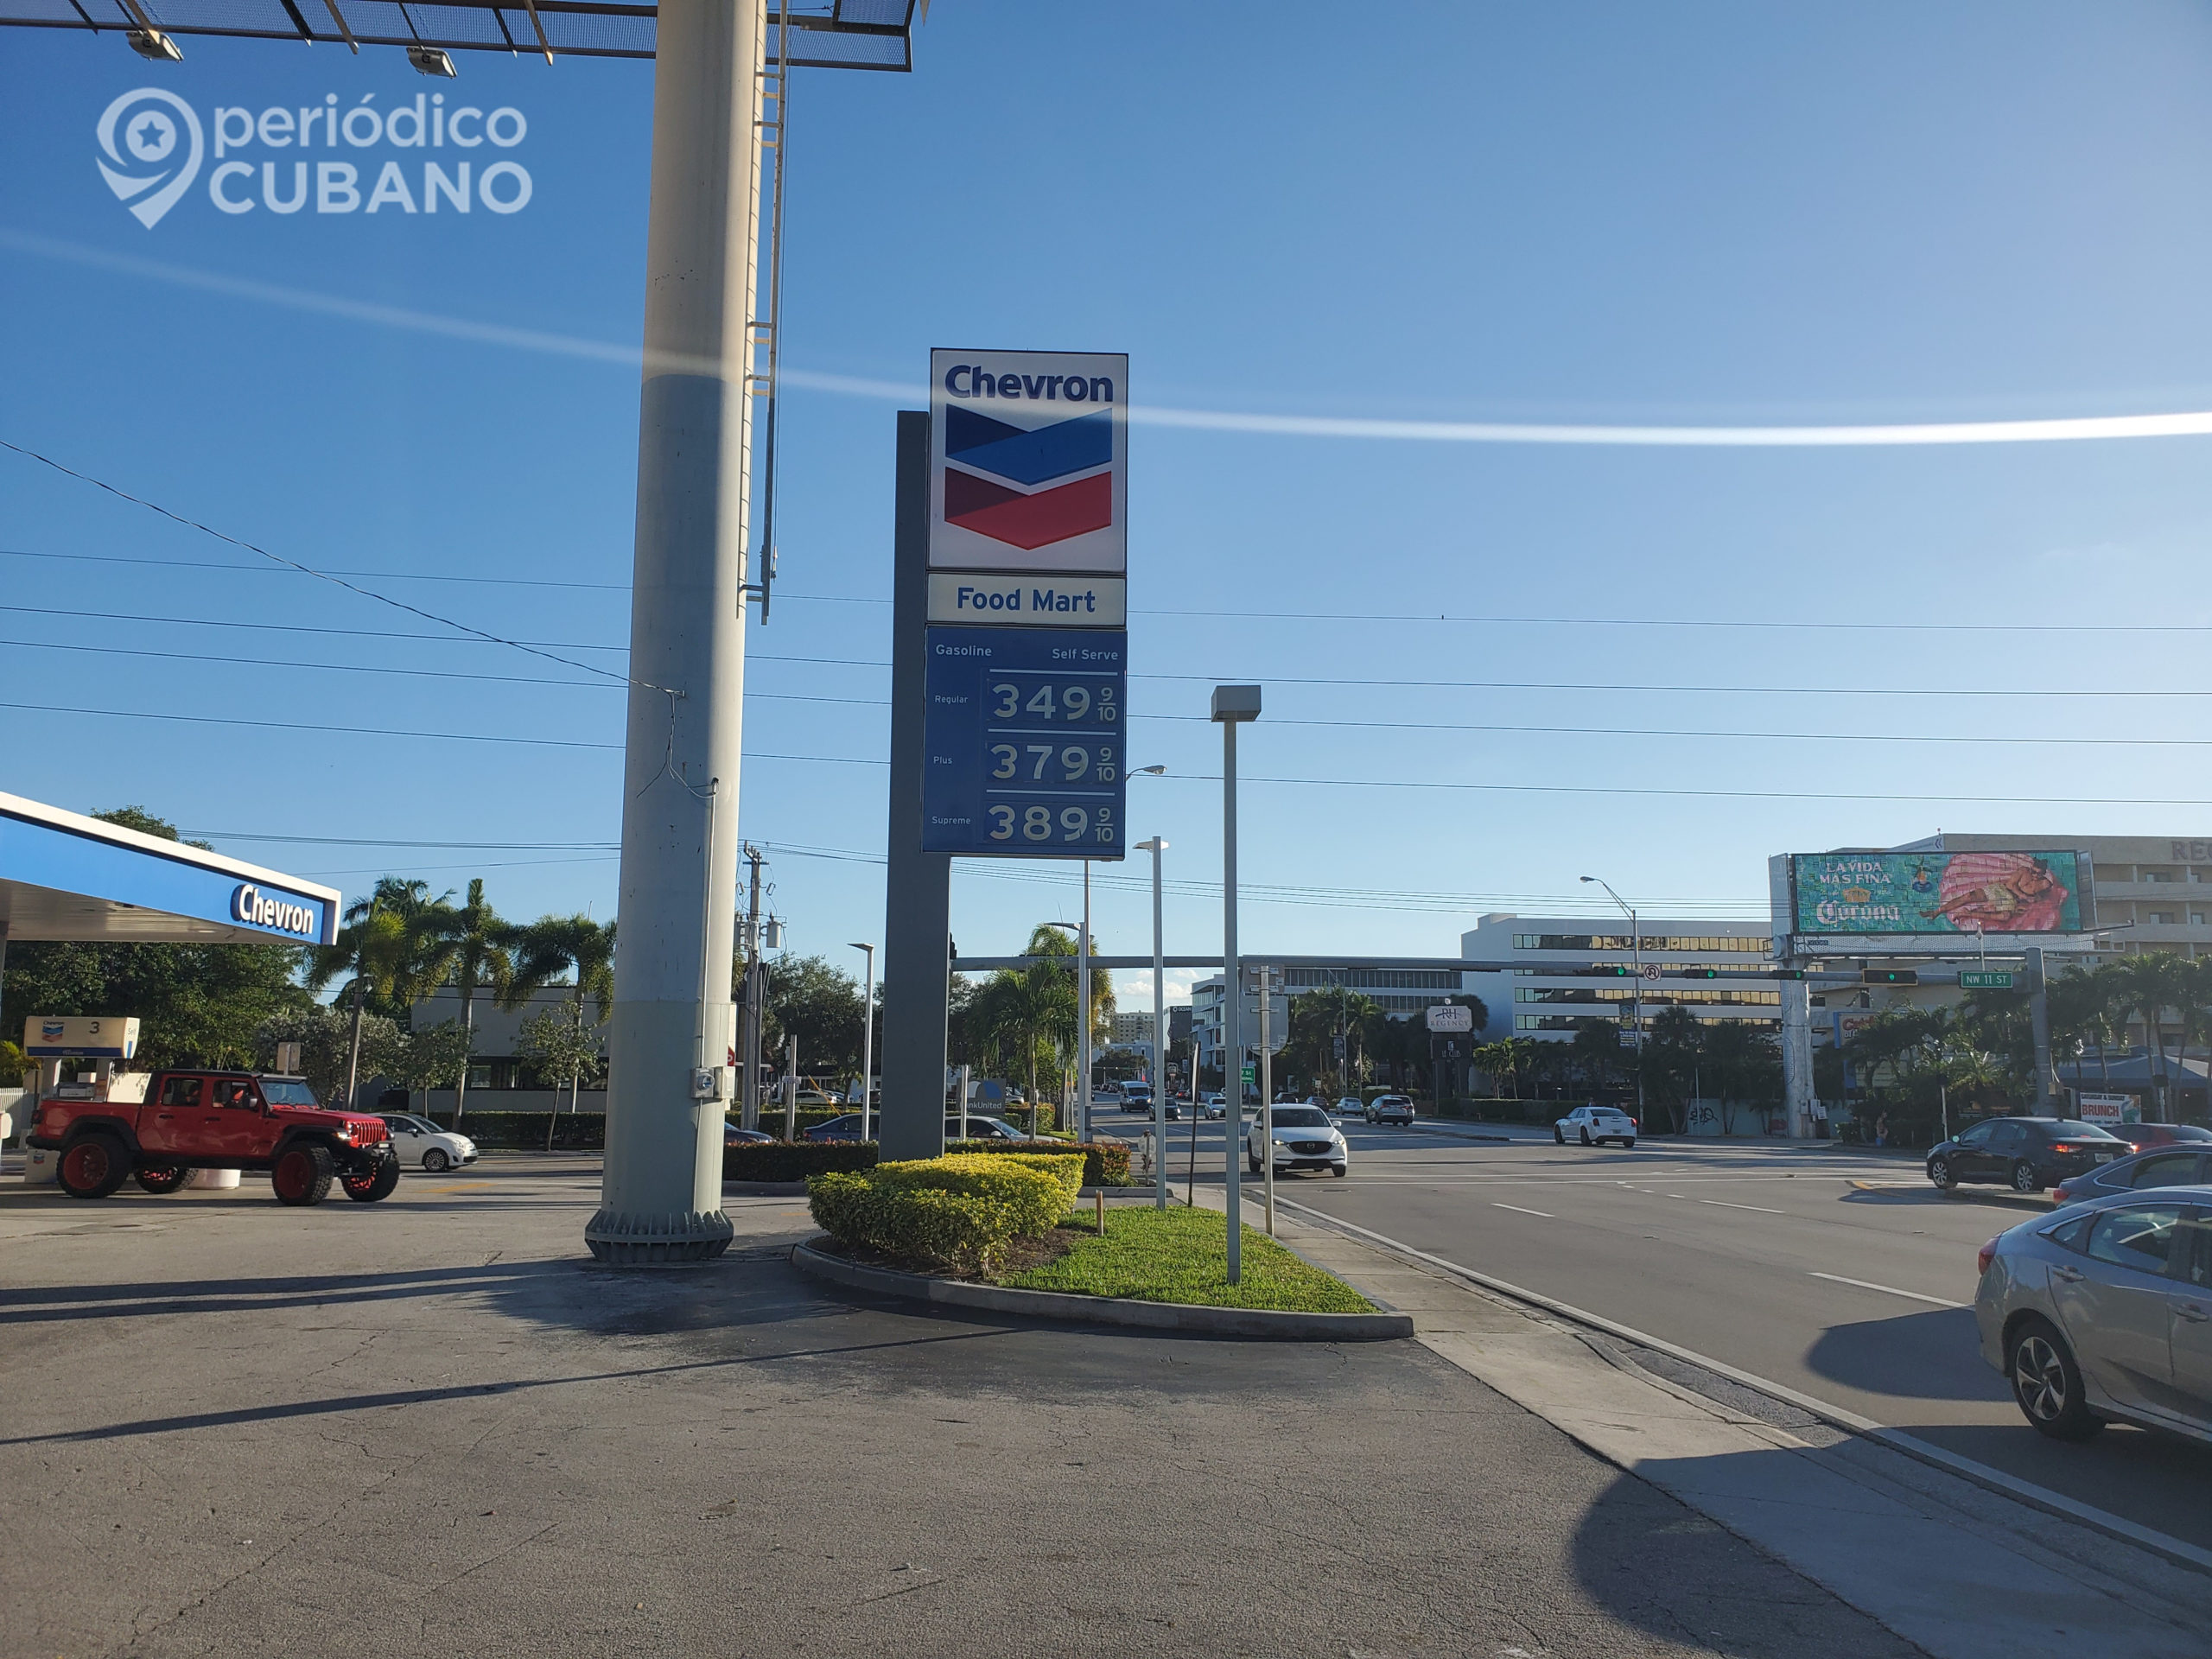 Florida galón de gasolina está por debajo de 4 dólares en el inicio de la semana